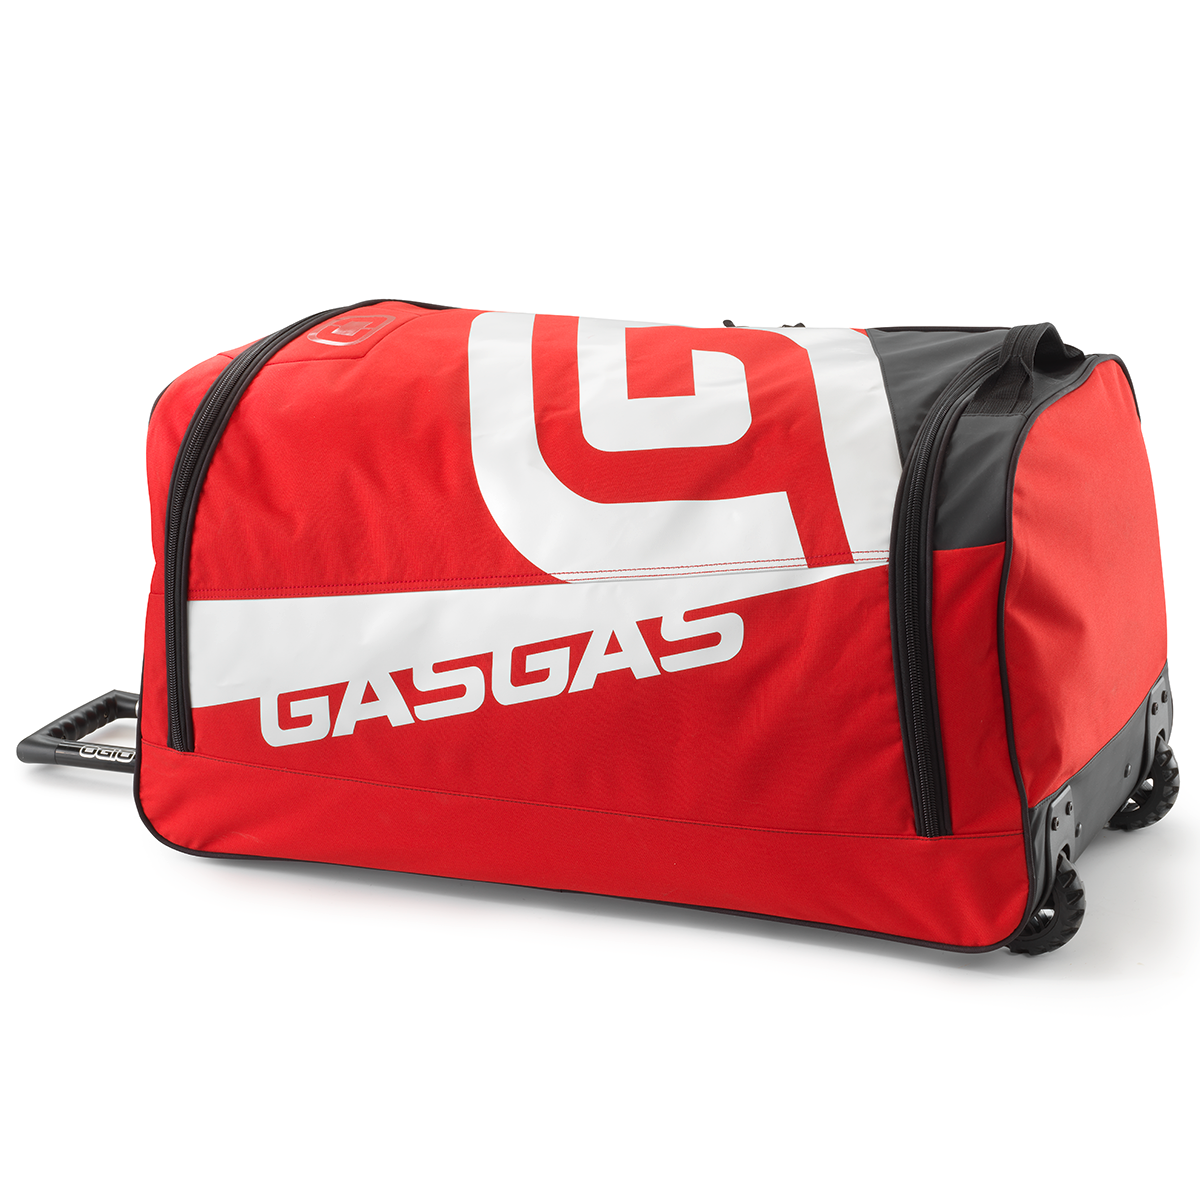 GASGAS Replica Team Gear Bag